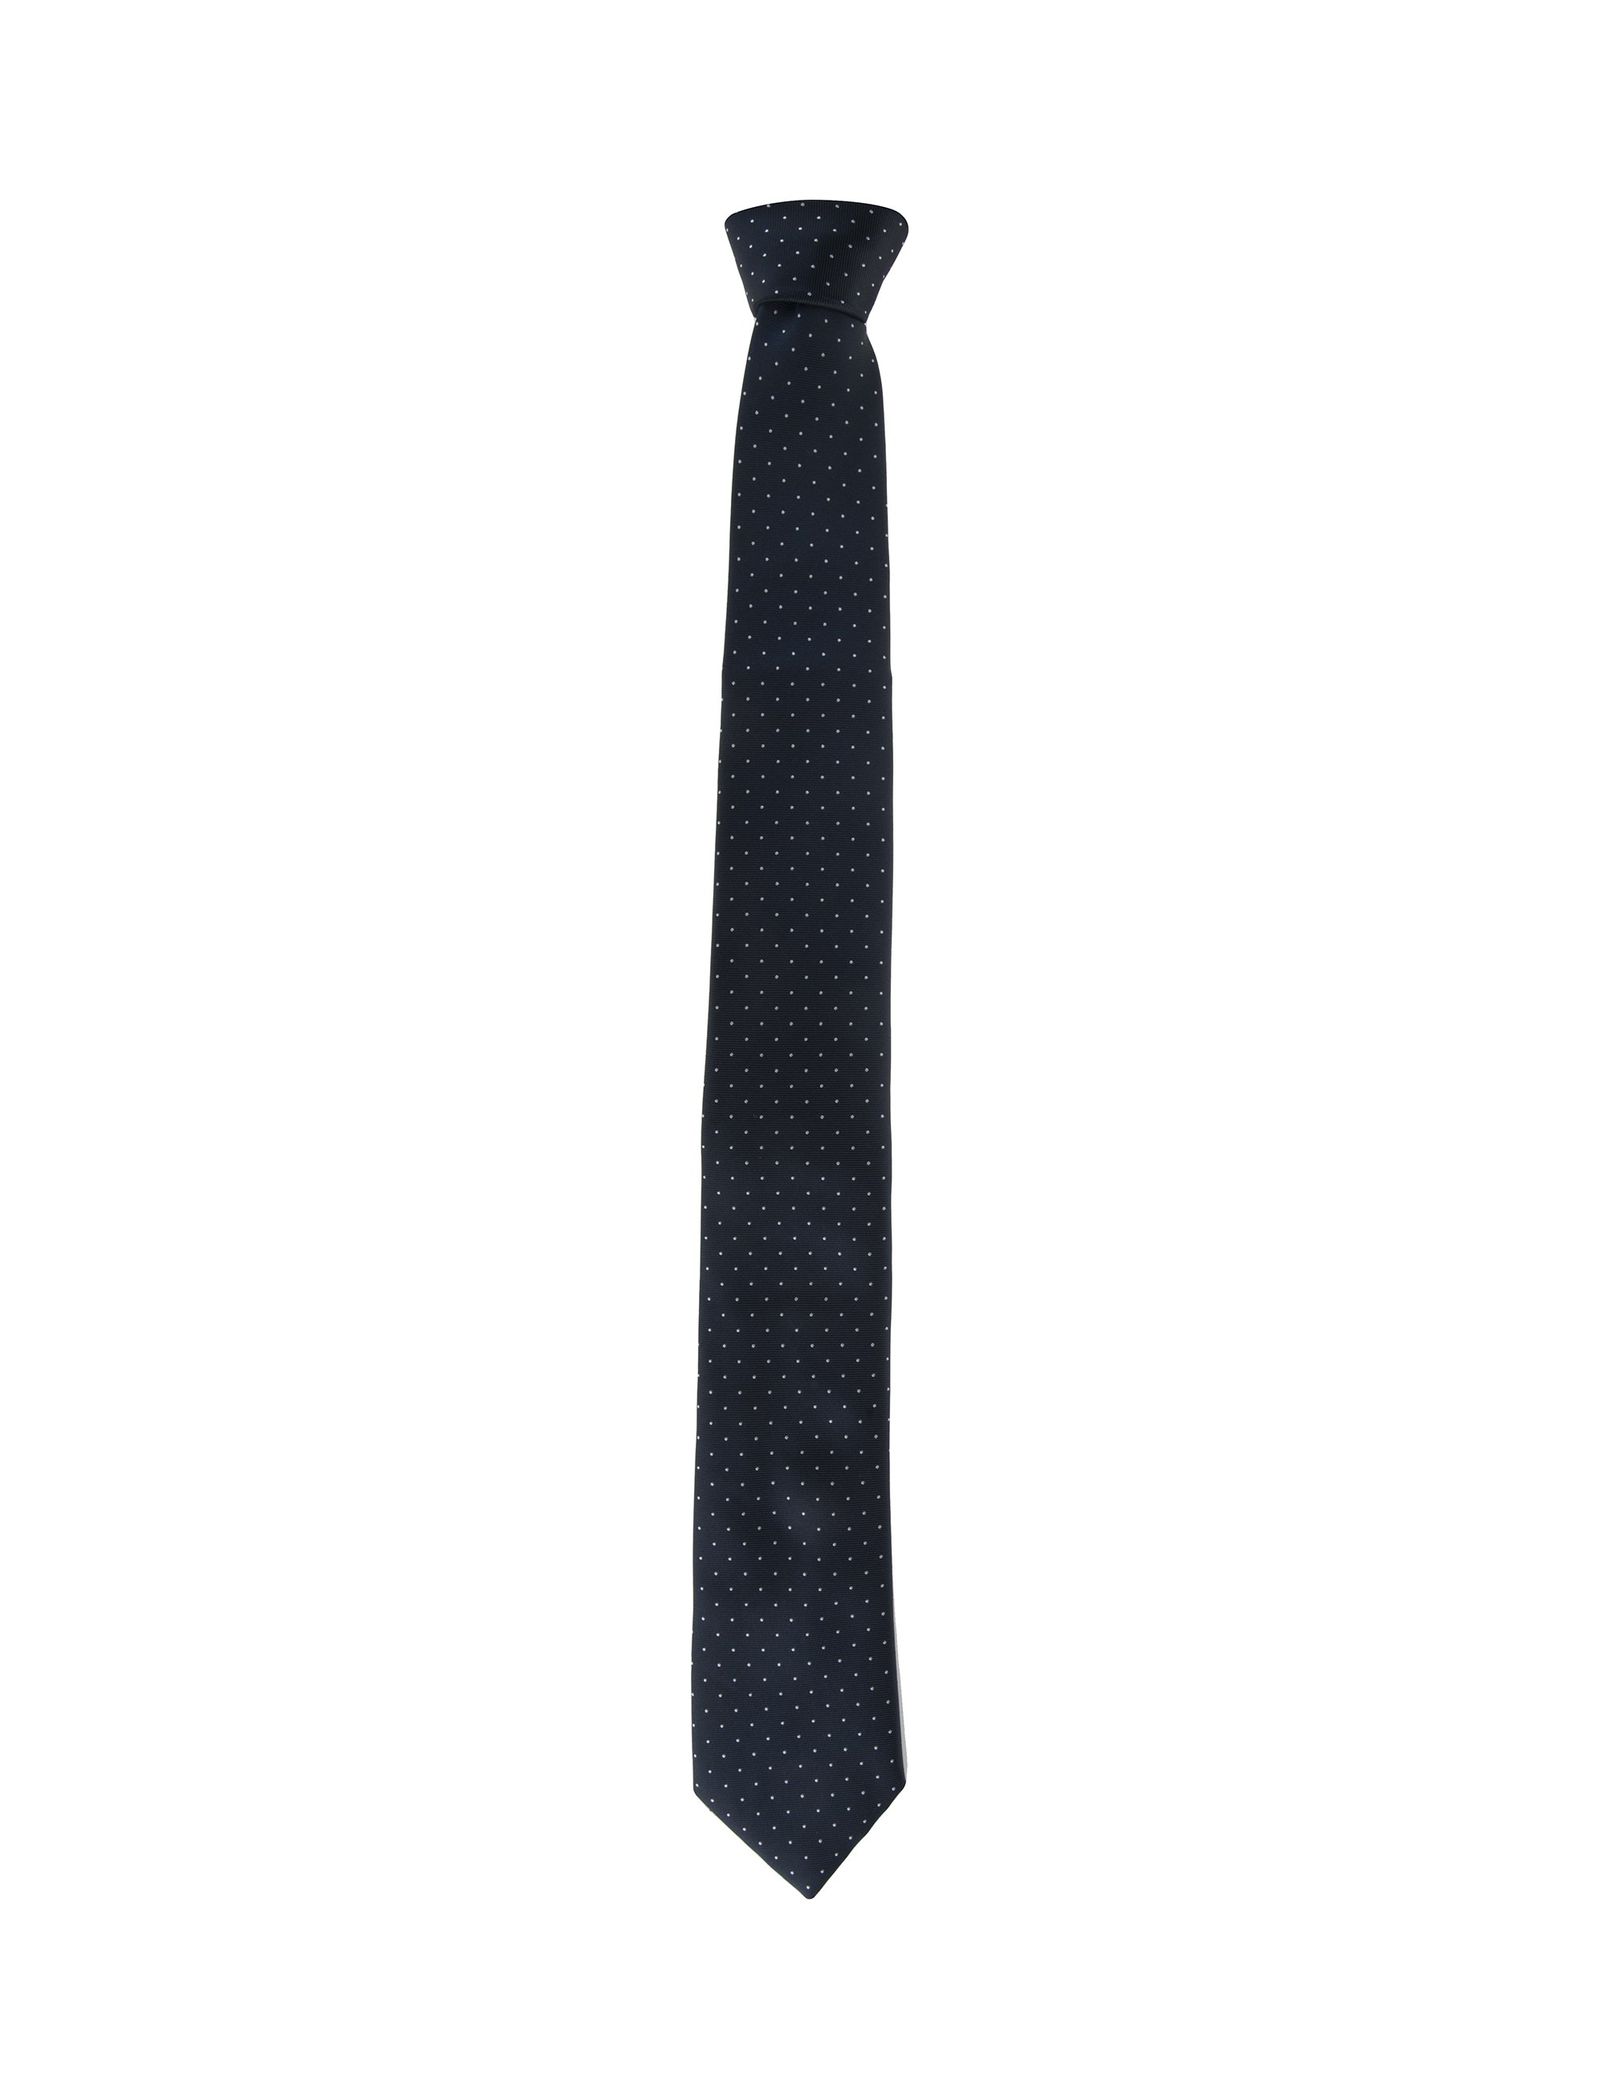 کراوات طرح دار مردانه - یوپیم تک سایز - سرمه اي - 1